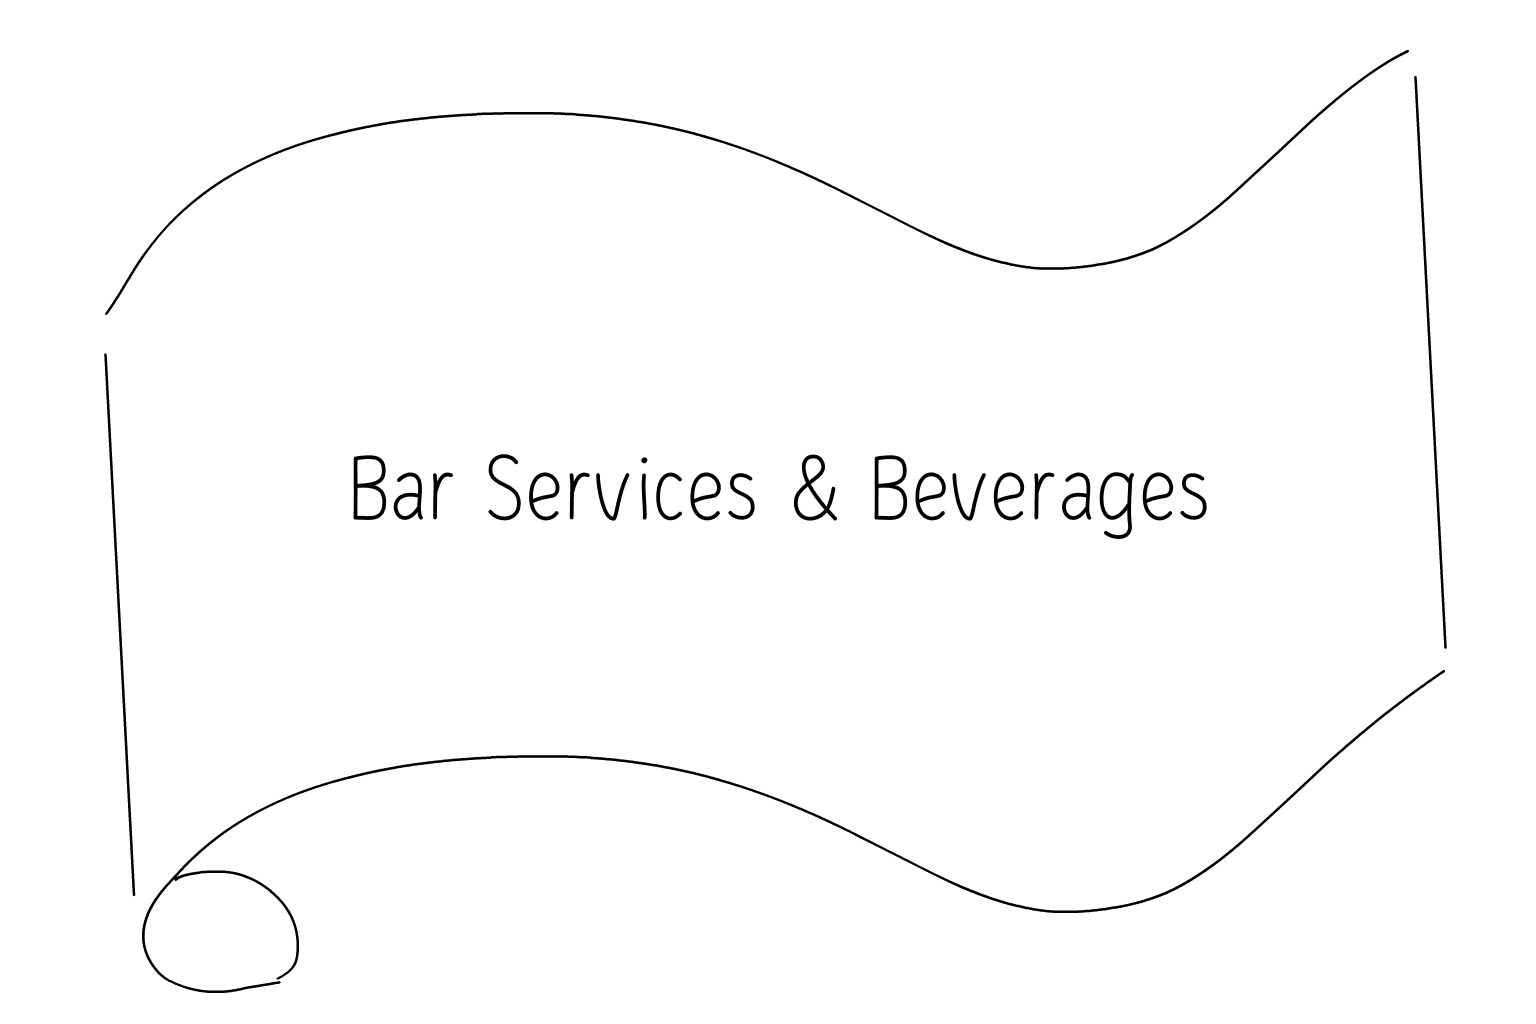 Иллюстрация услуг свадебного бара и напитков